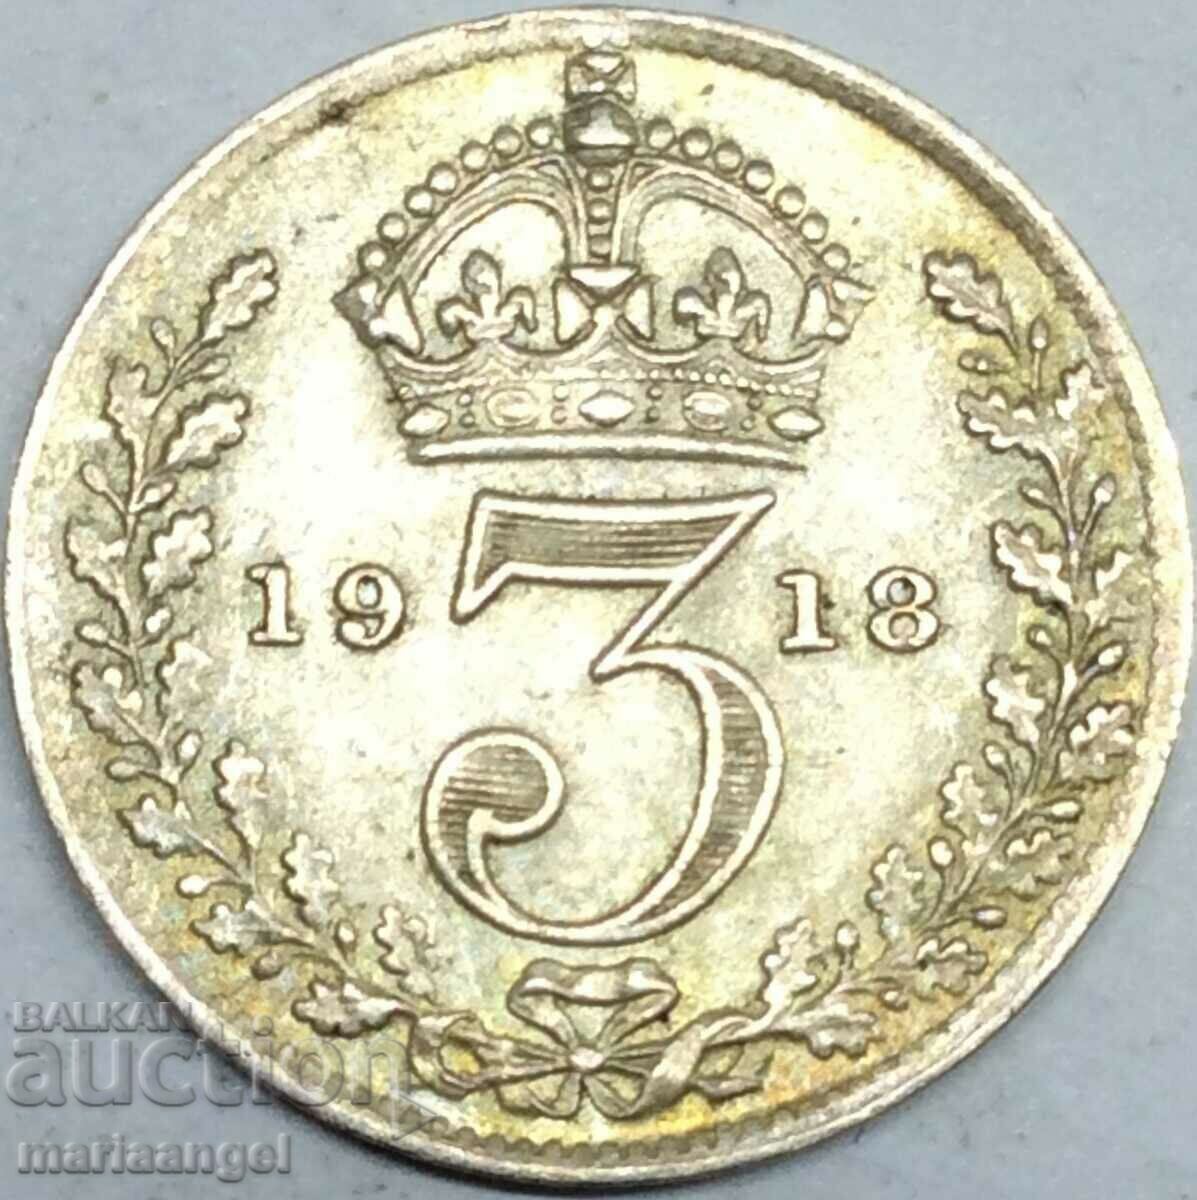 Great Britain 3 pence 1918 silver patina